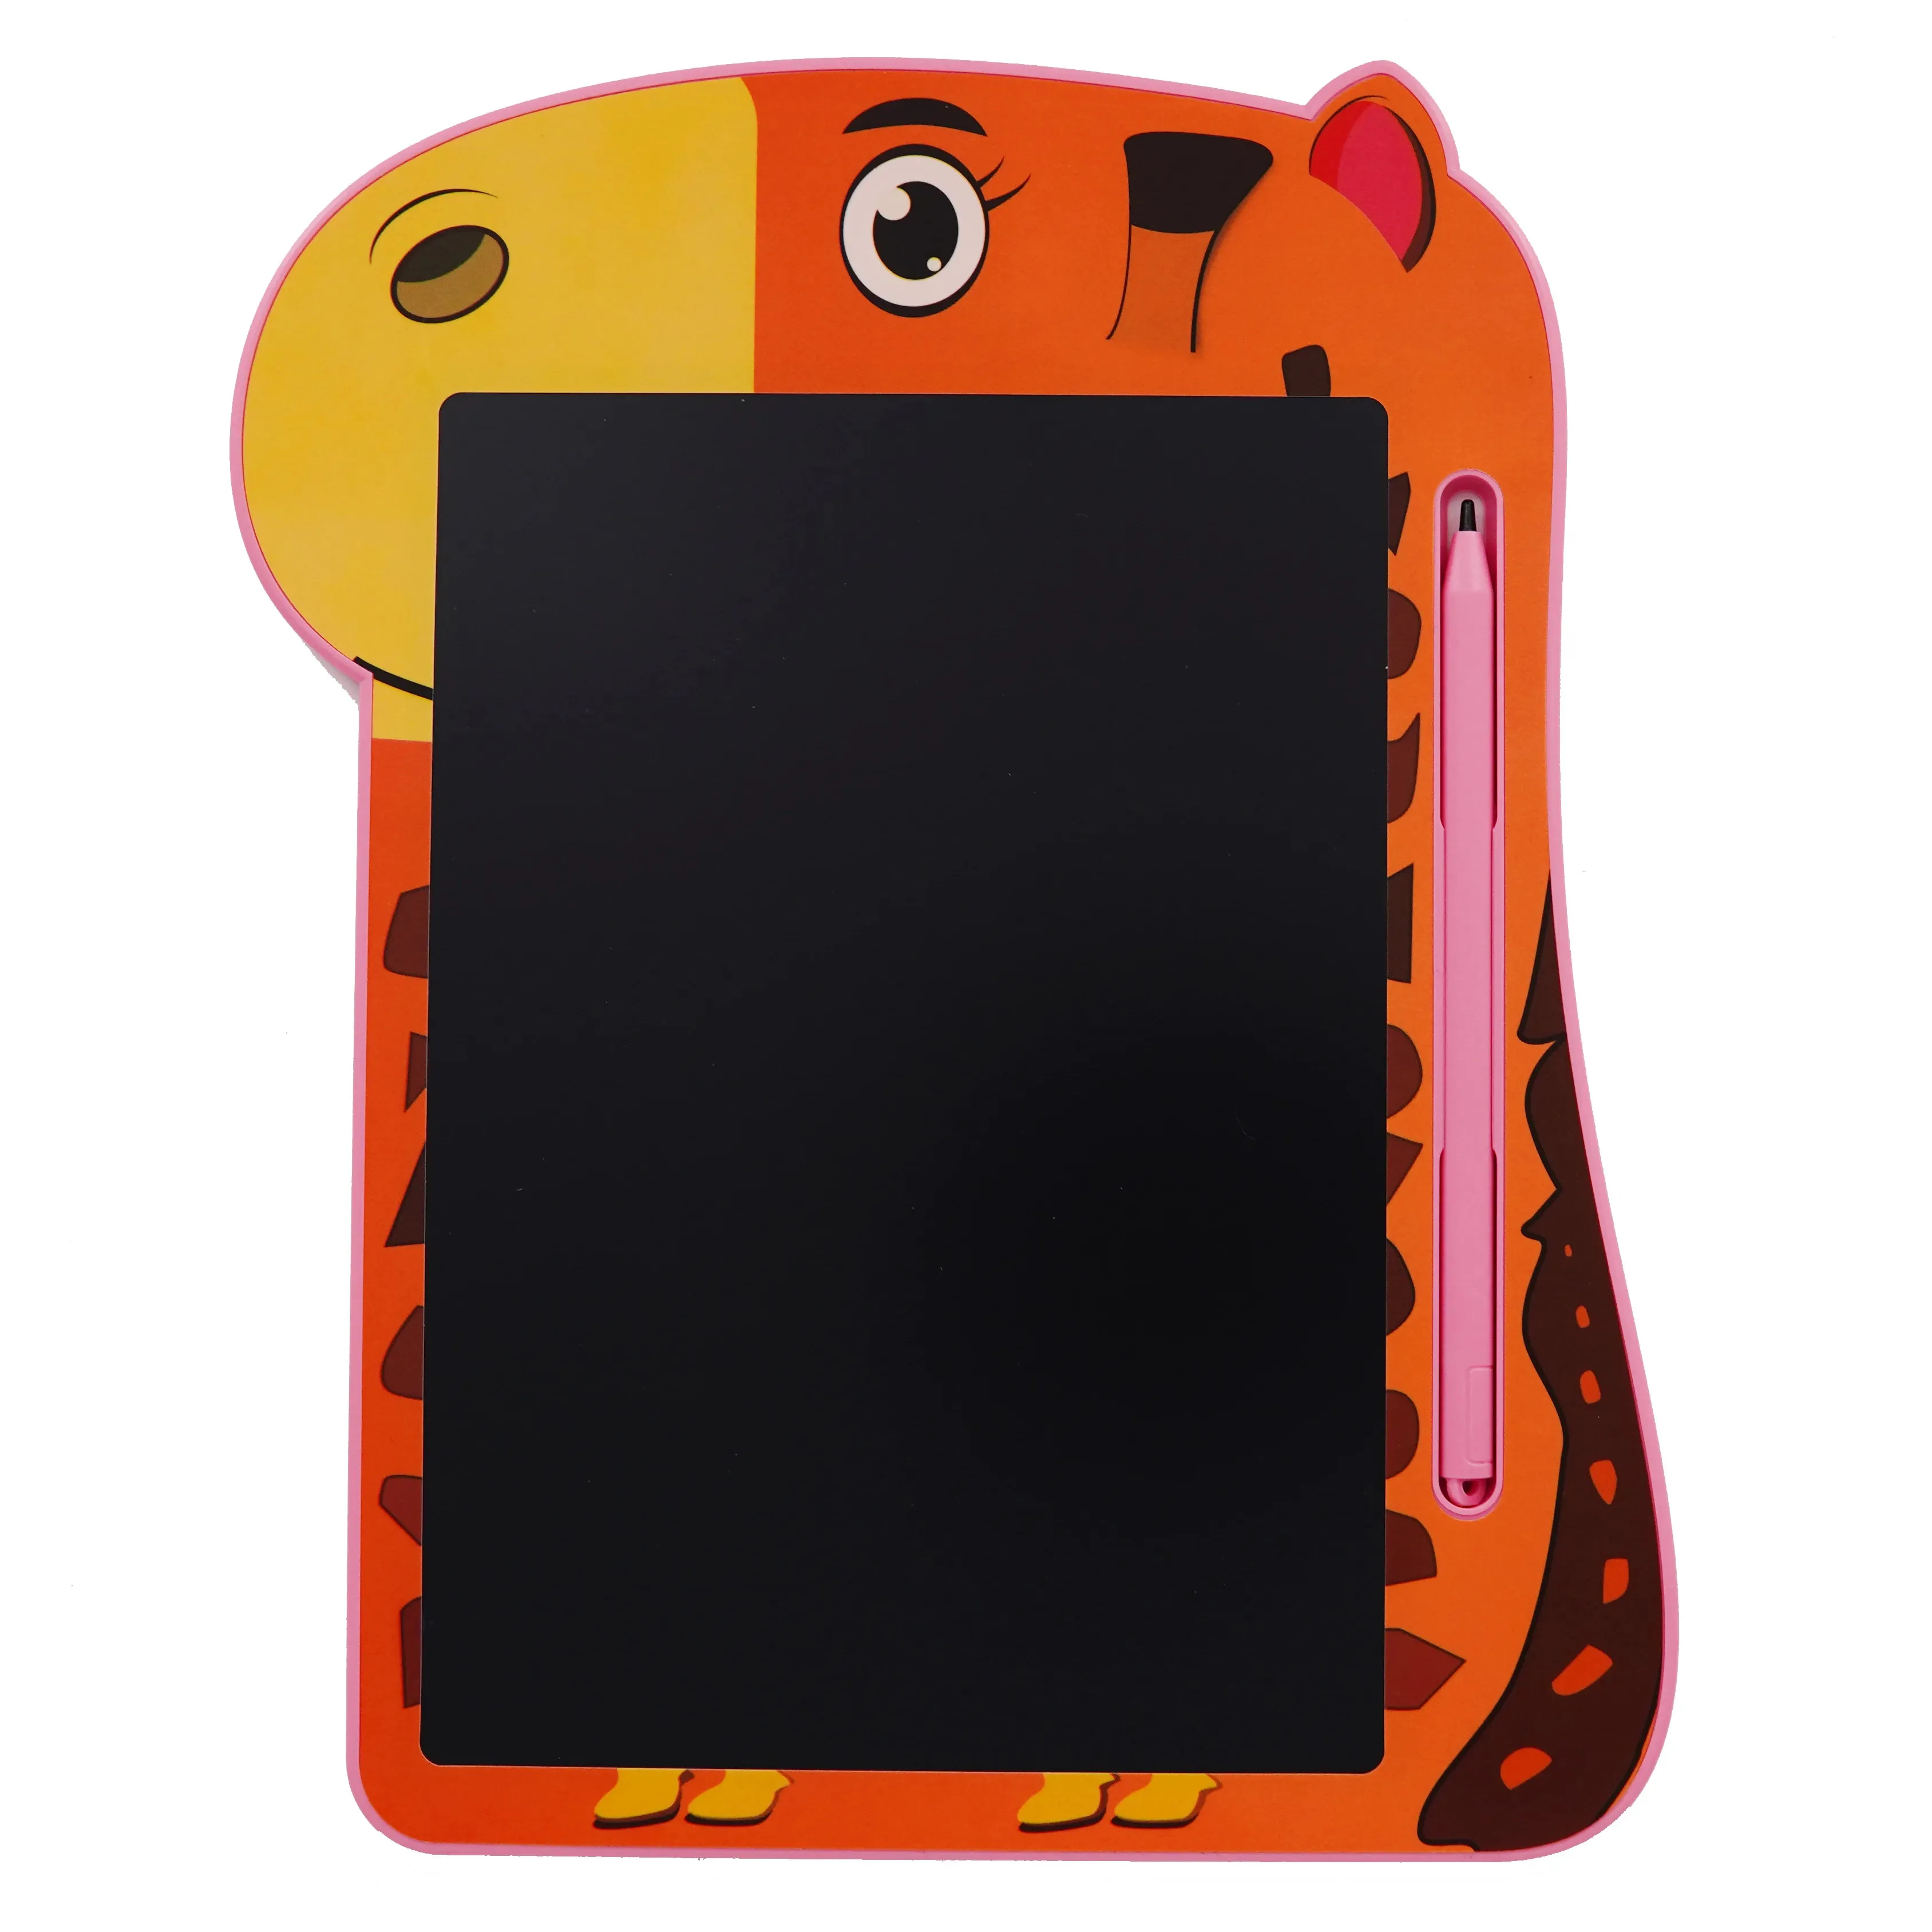 Tablero de escritura LCD Mihua, tablero de dibujo de 8,5 pulgadas, almohadilla de grafiti Digital para niños, juguetes educativos, tableta de escritura LCD